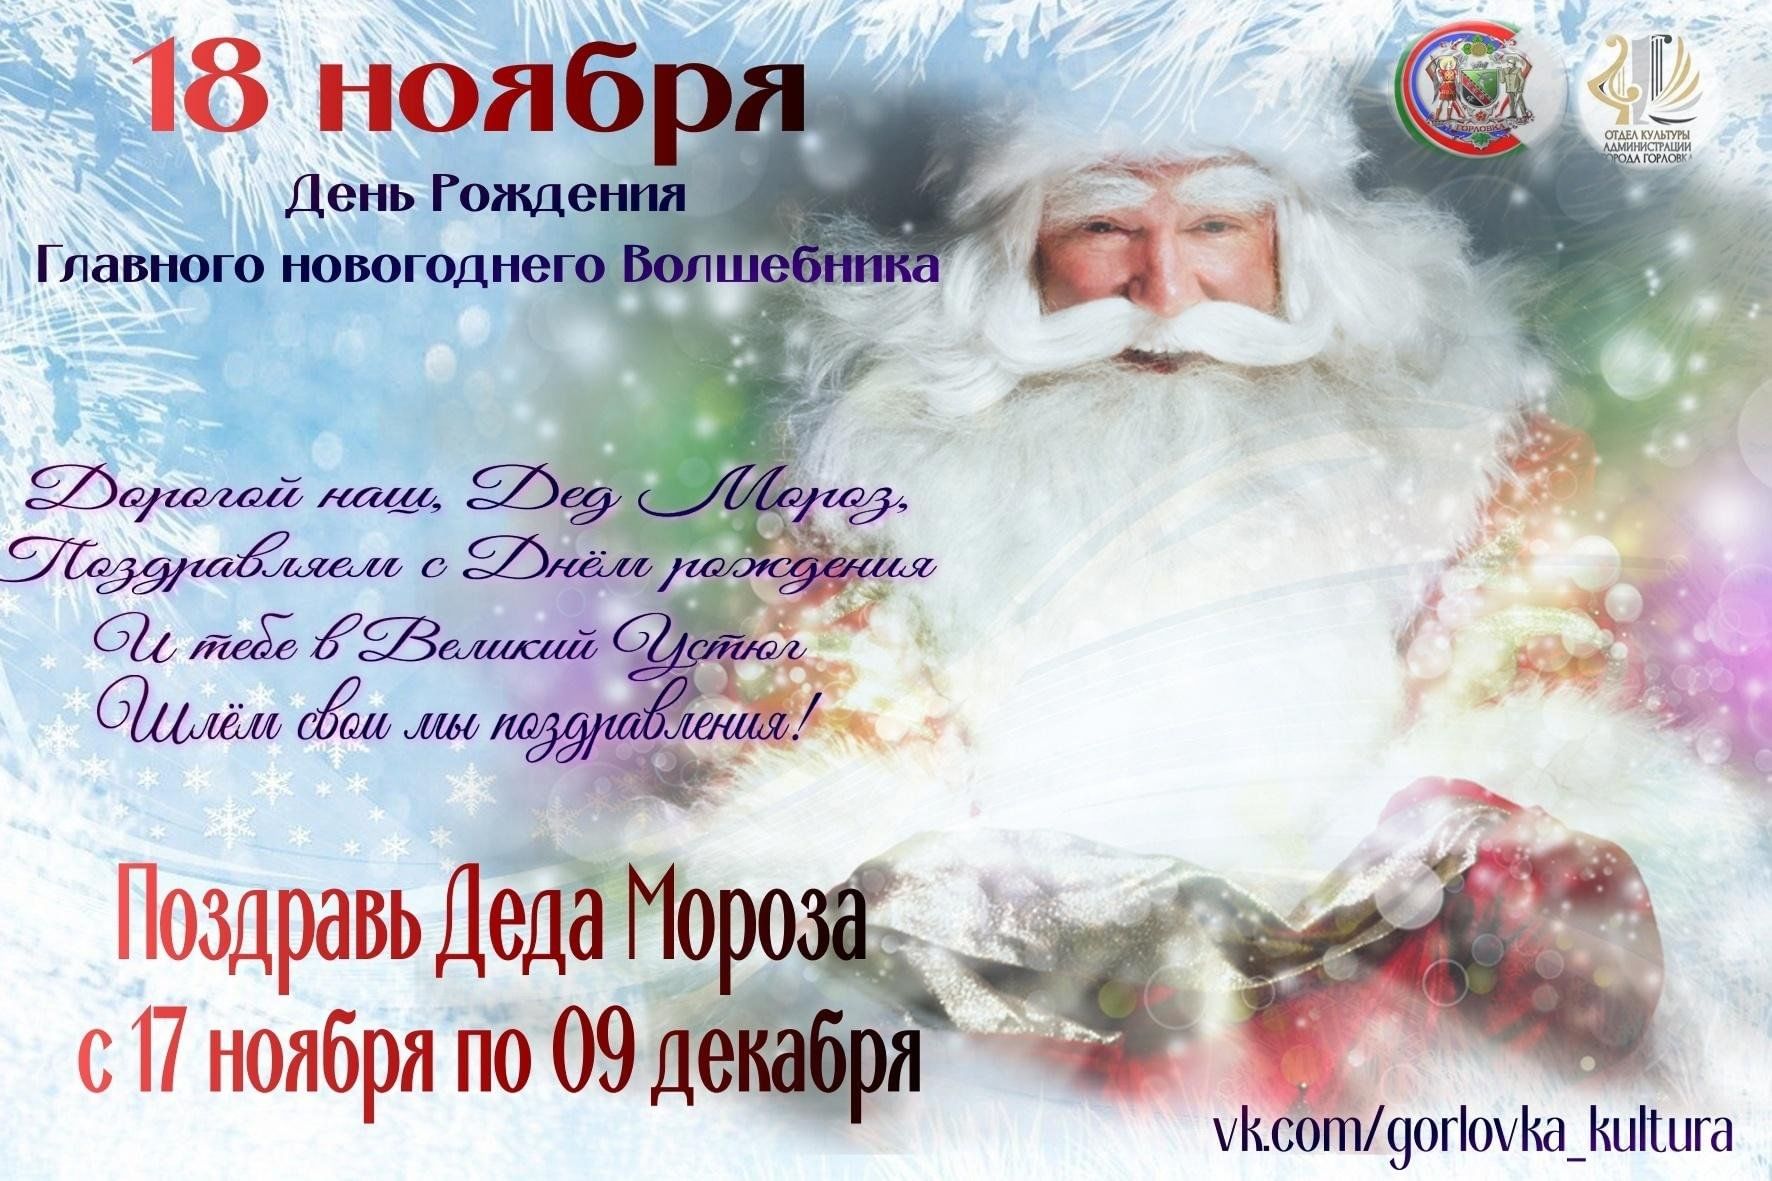 18 ноября дед мороз. Дед Мороз поздравляет. 18 День рождения Деда Мороза. Плакат с днем рождения дед Мороз. 18 Ноября день рождения Деда Мороза.